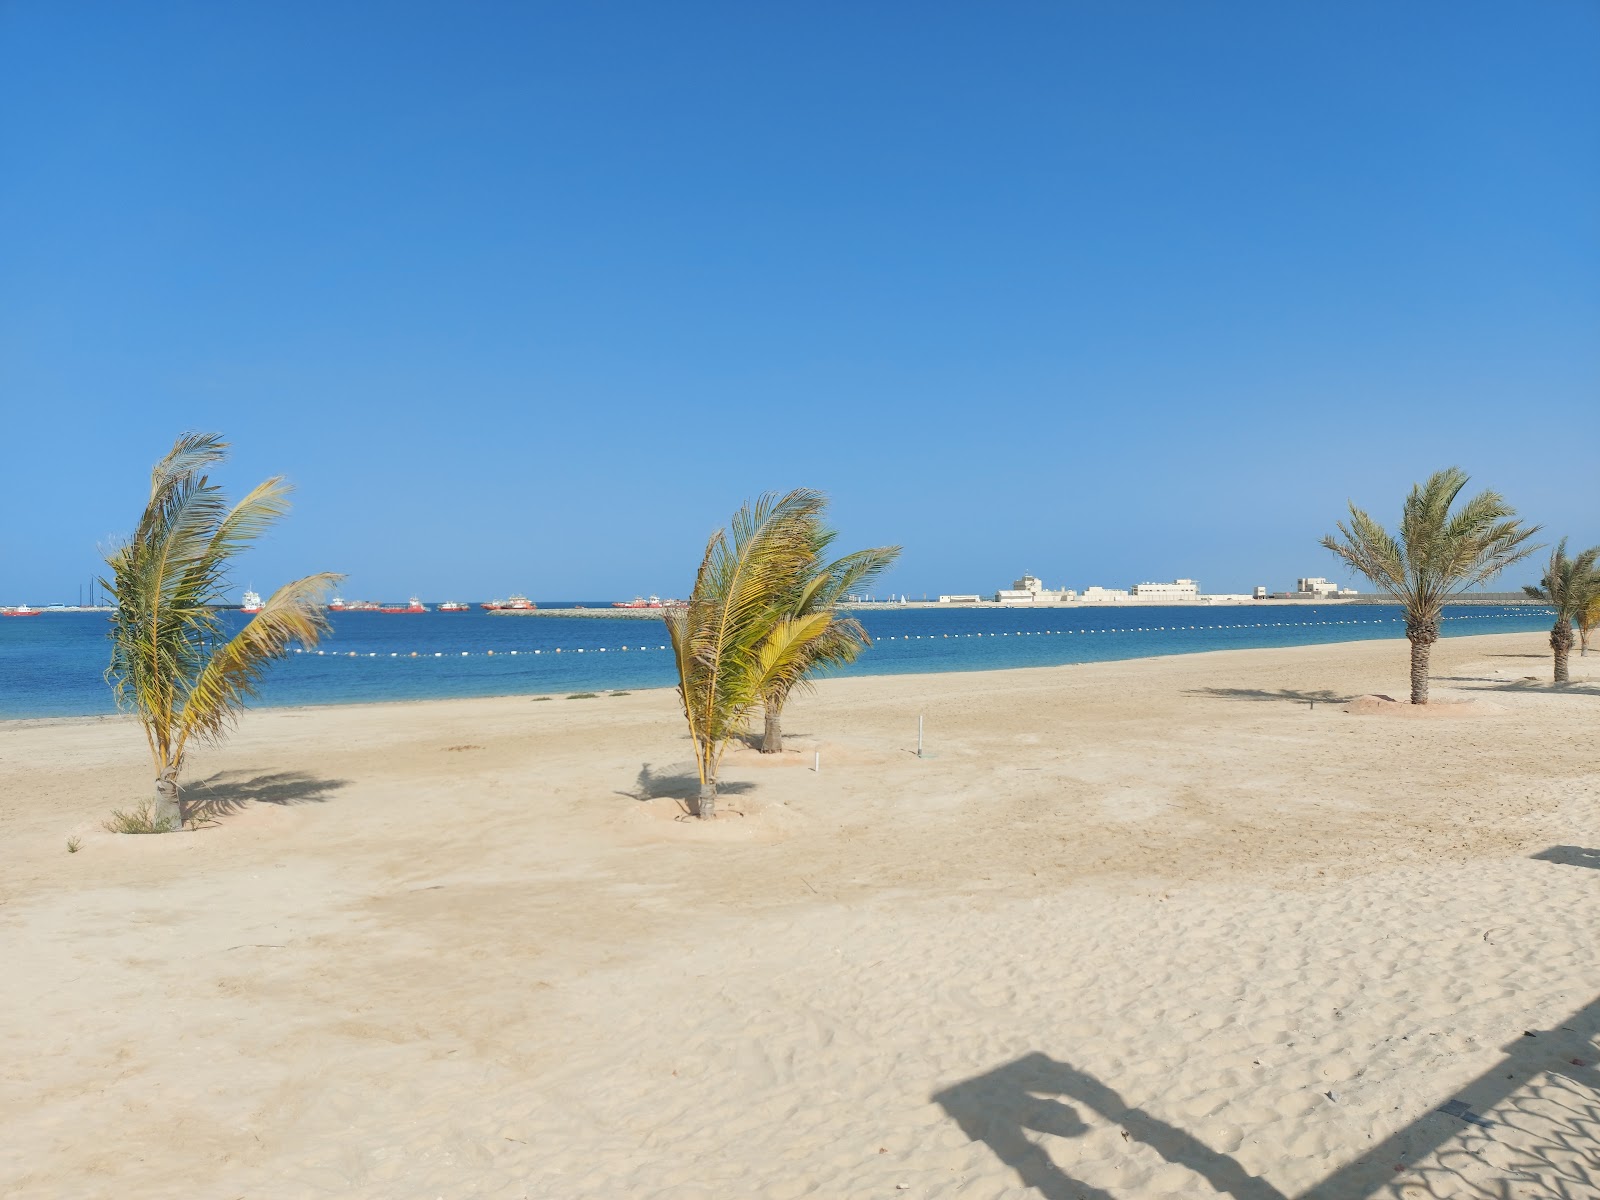 Al Mirfa Beach'in fotoğrafı parlak kum yüzey ile